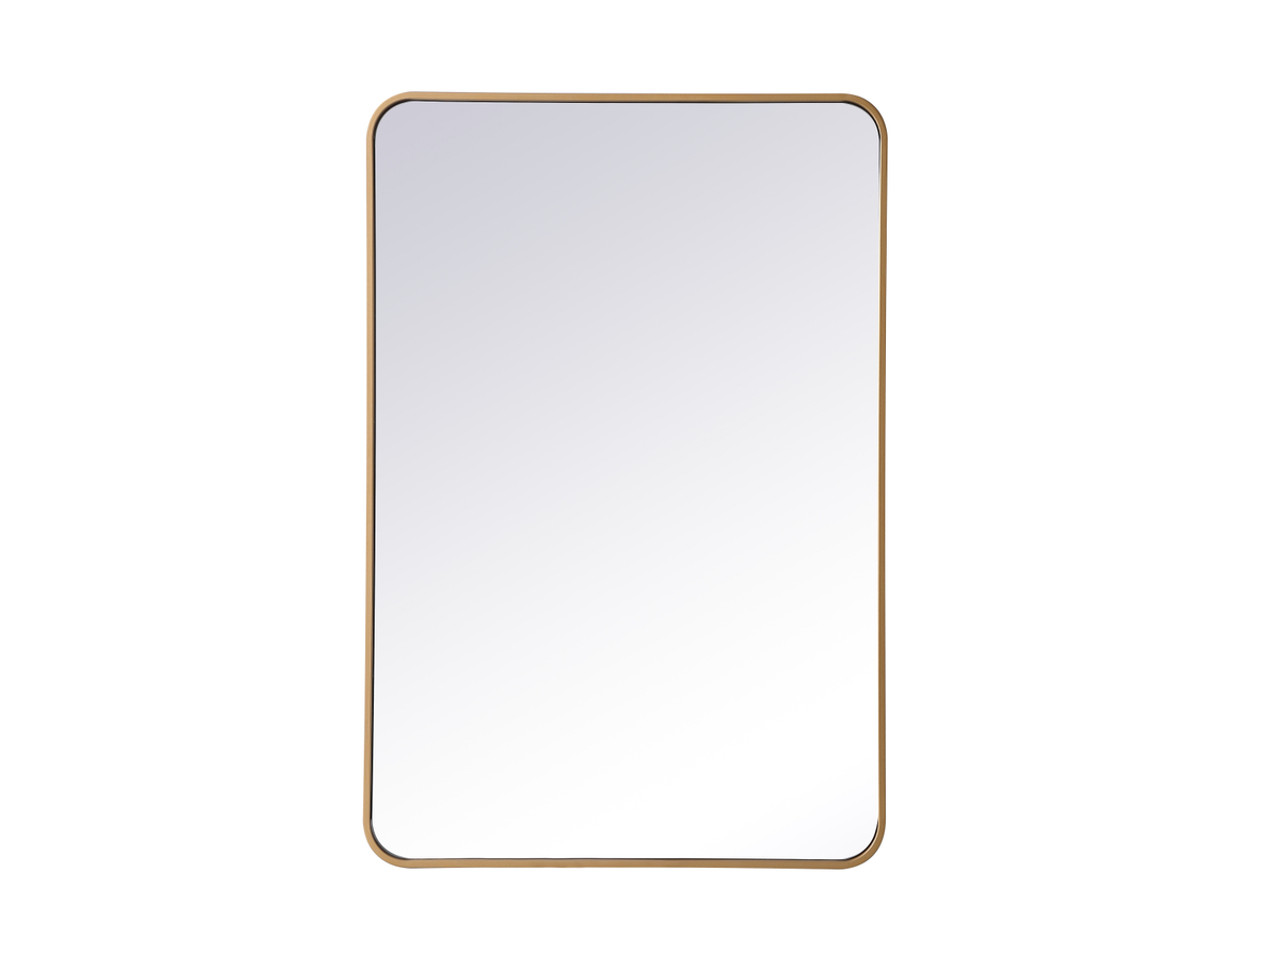 Elegant Decor MR802740BR Soft corner metal rectangular mirror 27x40 inch in Brass